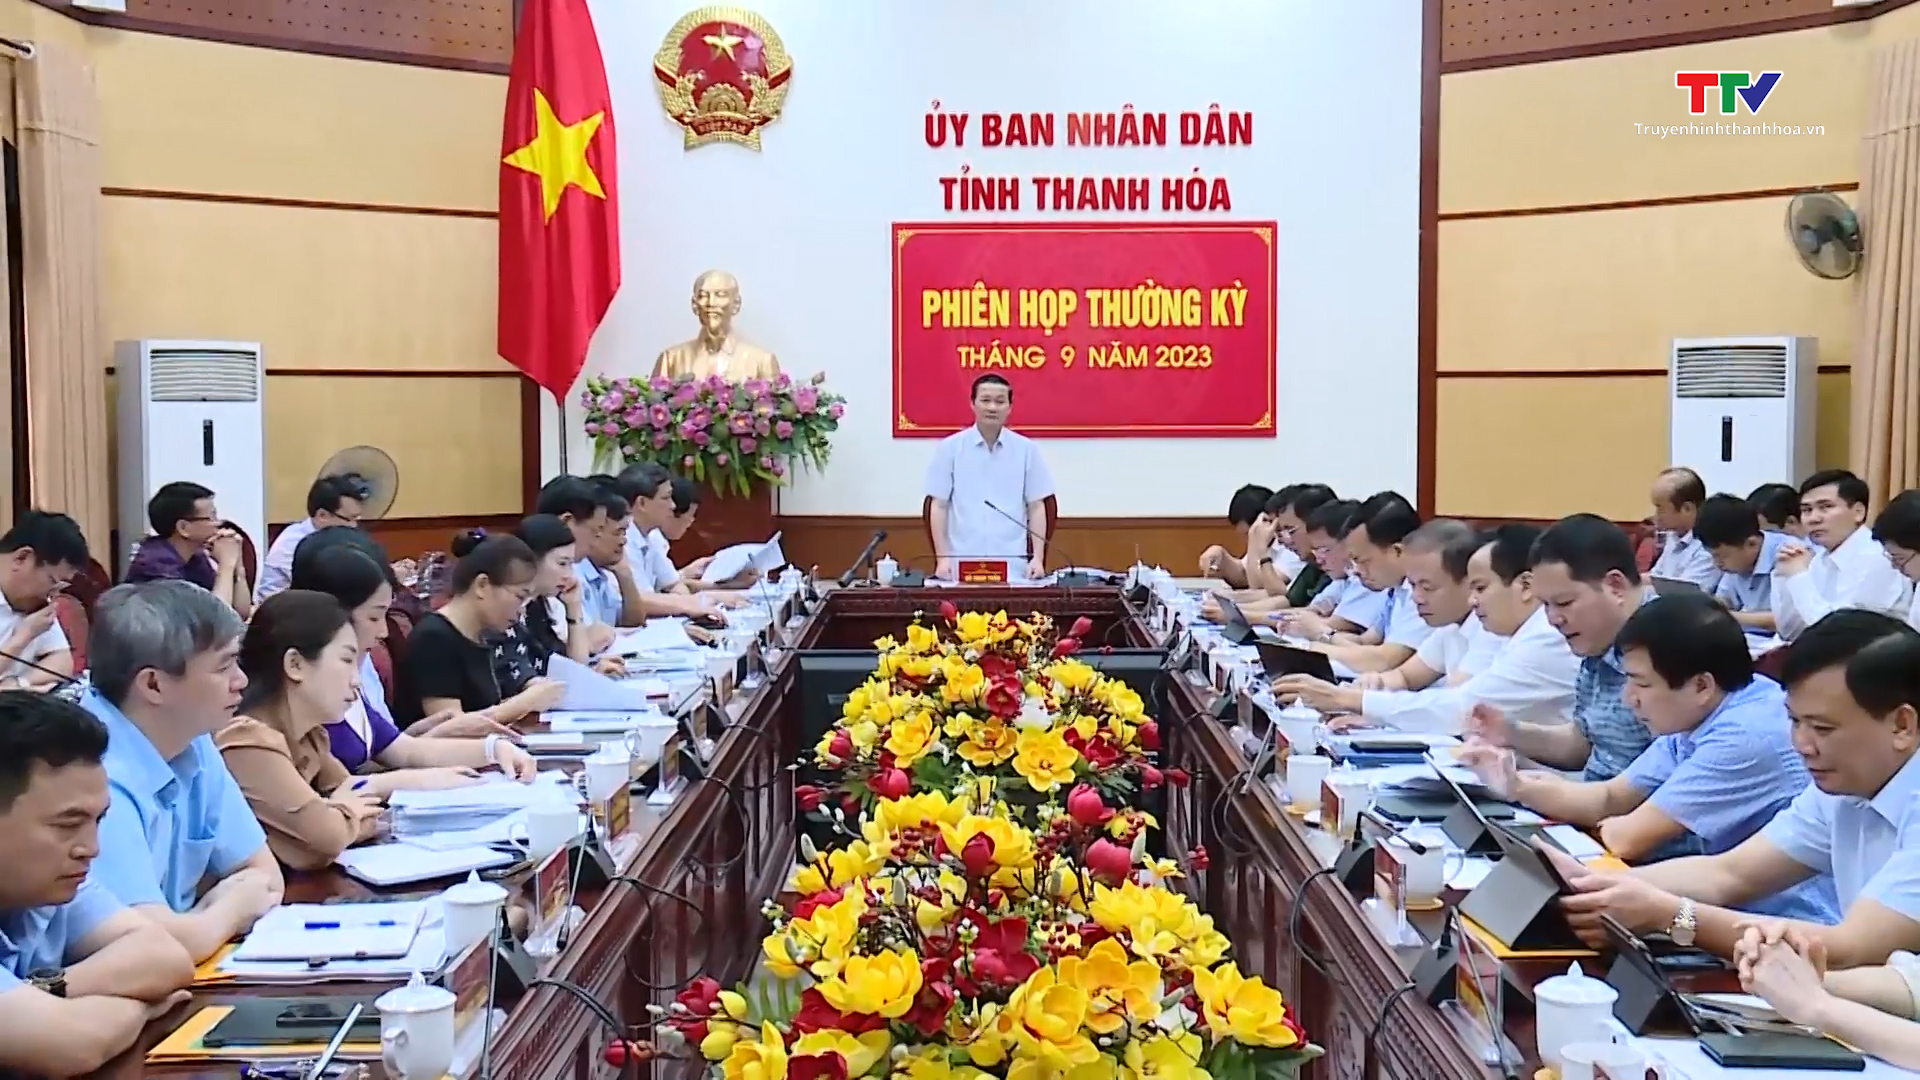 Phiên họp thường kỳ Ủy ban Nhân dân tỉnh tháng 9 - Ảnh 8.